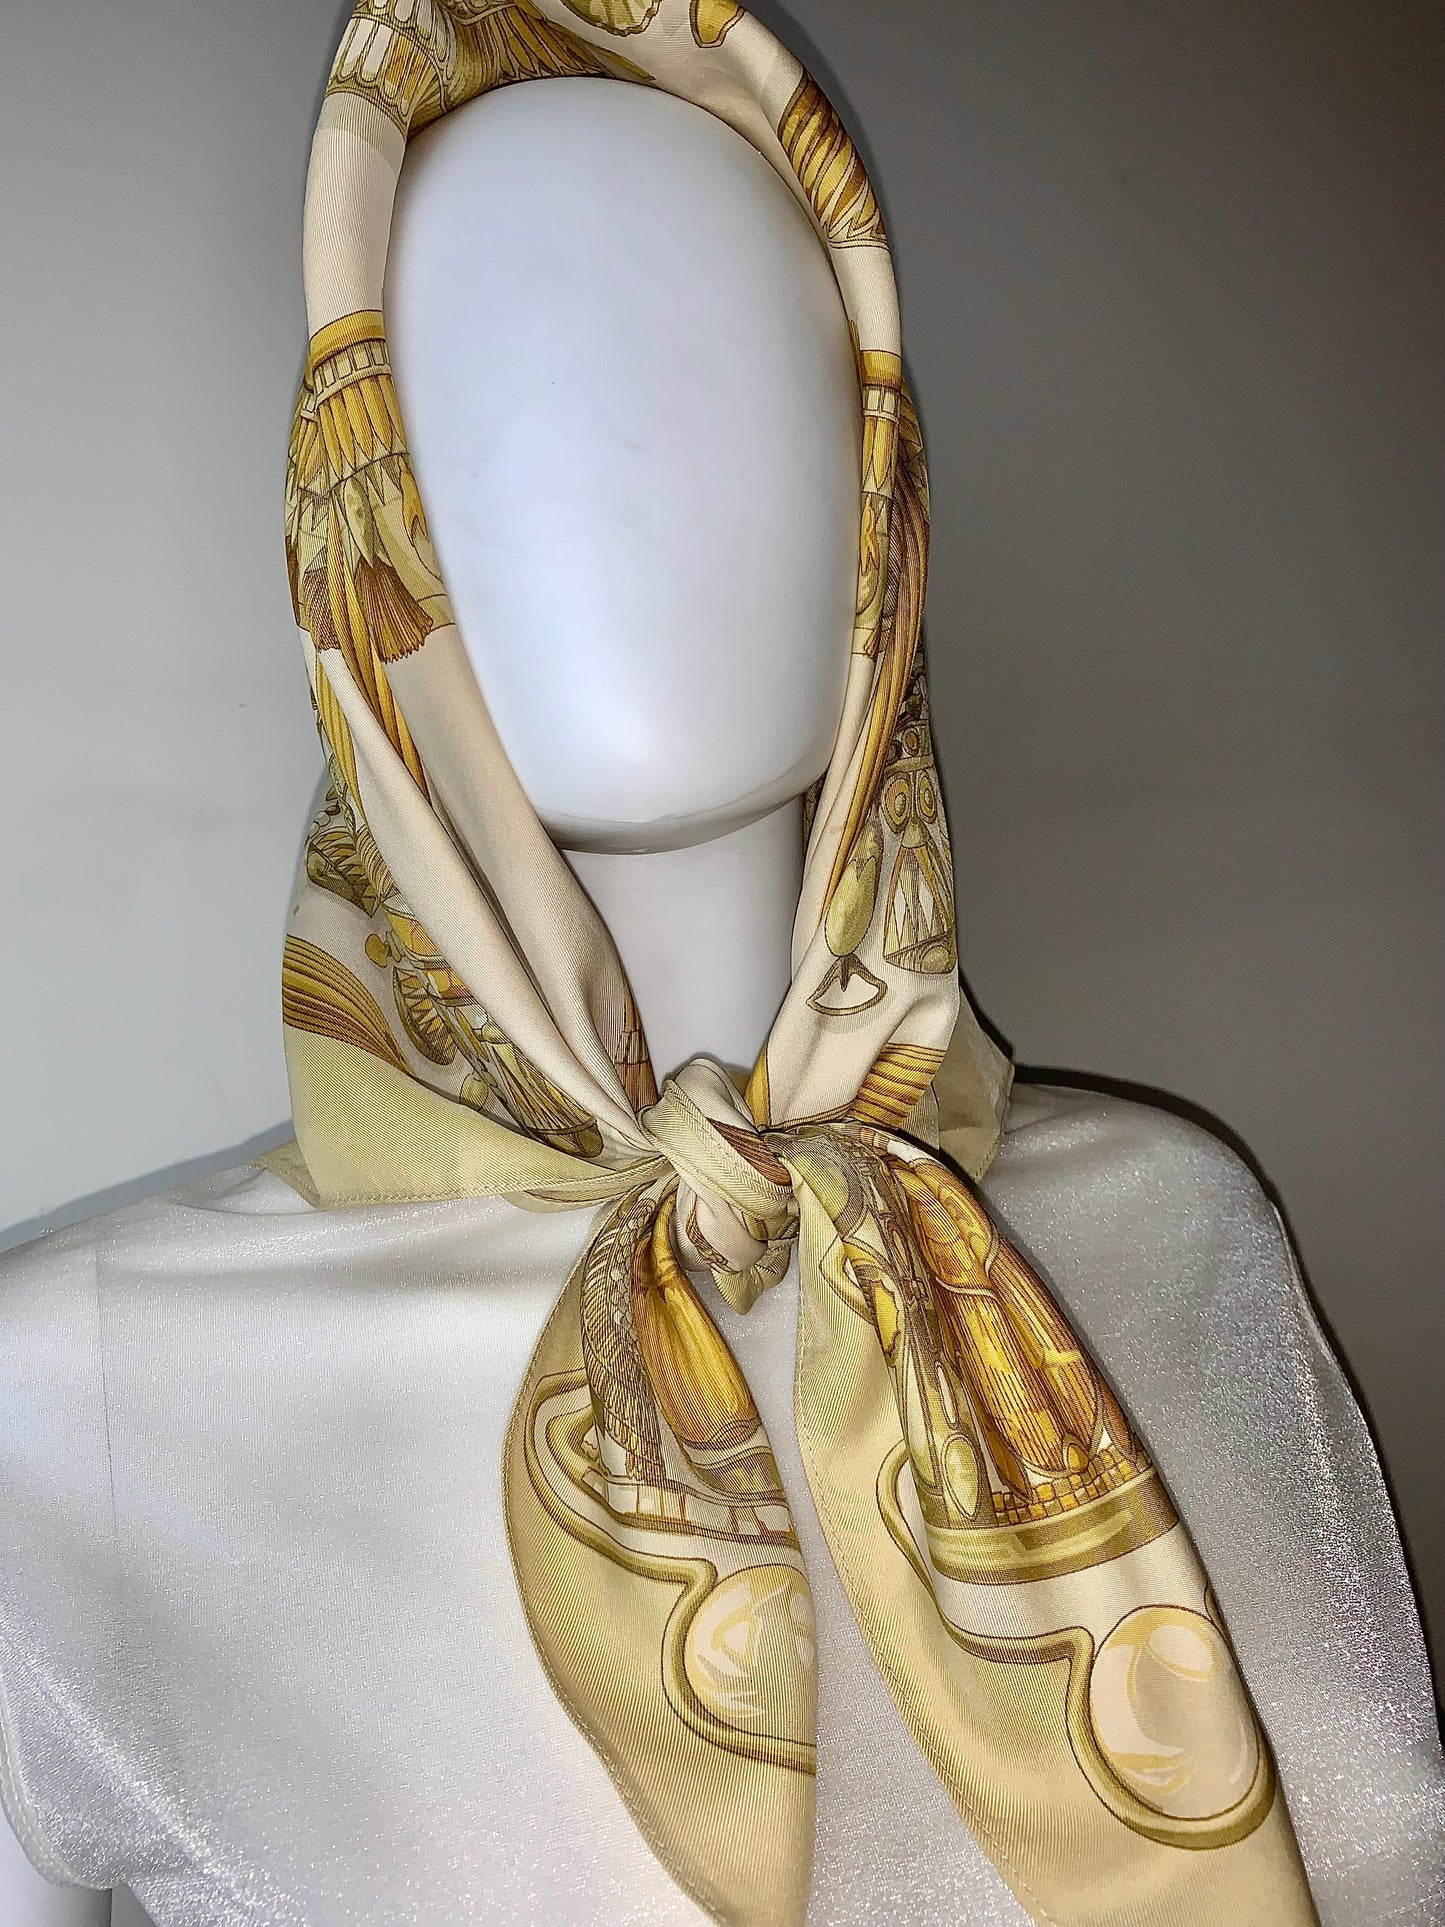 Hermès Pre-loved Silk Scarf